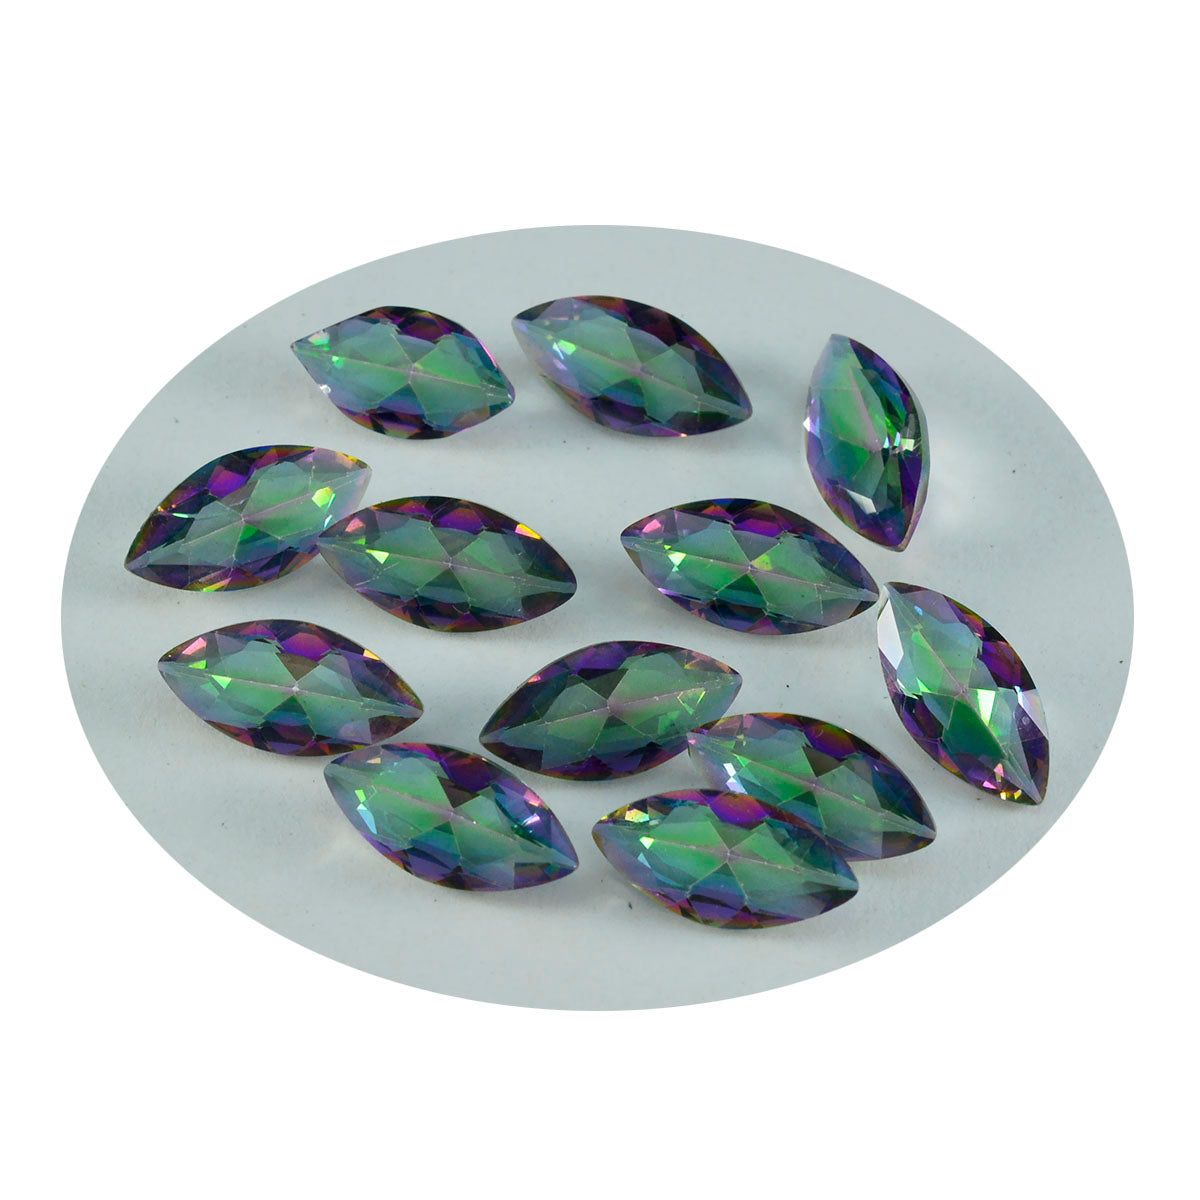 Riyogems, 1 pieza, cuarzo místico multicolor facetado, 5x10mm, forma de Marquesa, gemas sueltas de calidad y belleza